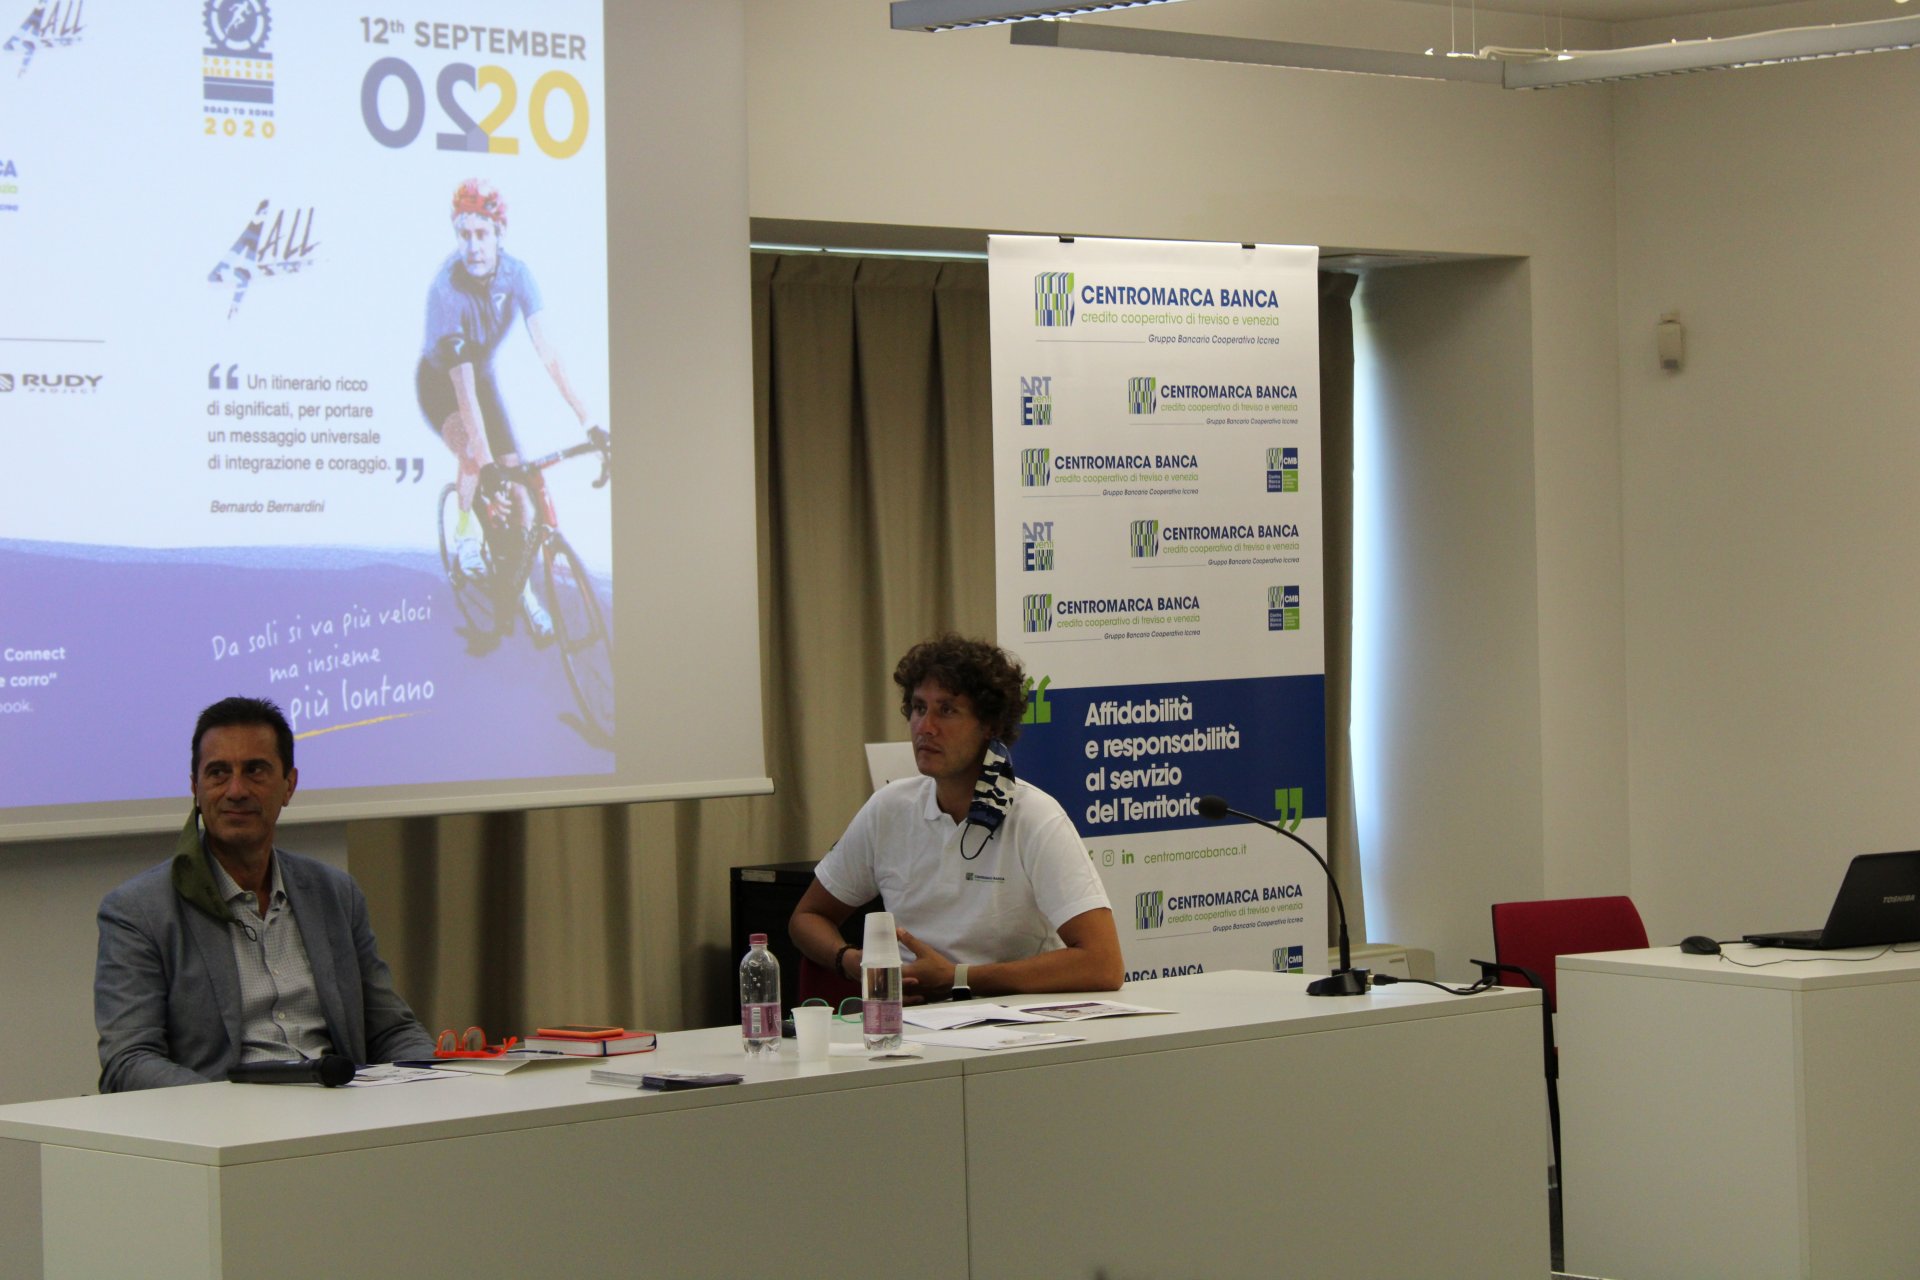 Da Treviso a Roma, 700 chilometri in bicicletta: ecco la nuova impresa di Bernardini - VIDEO